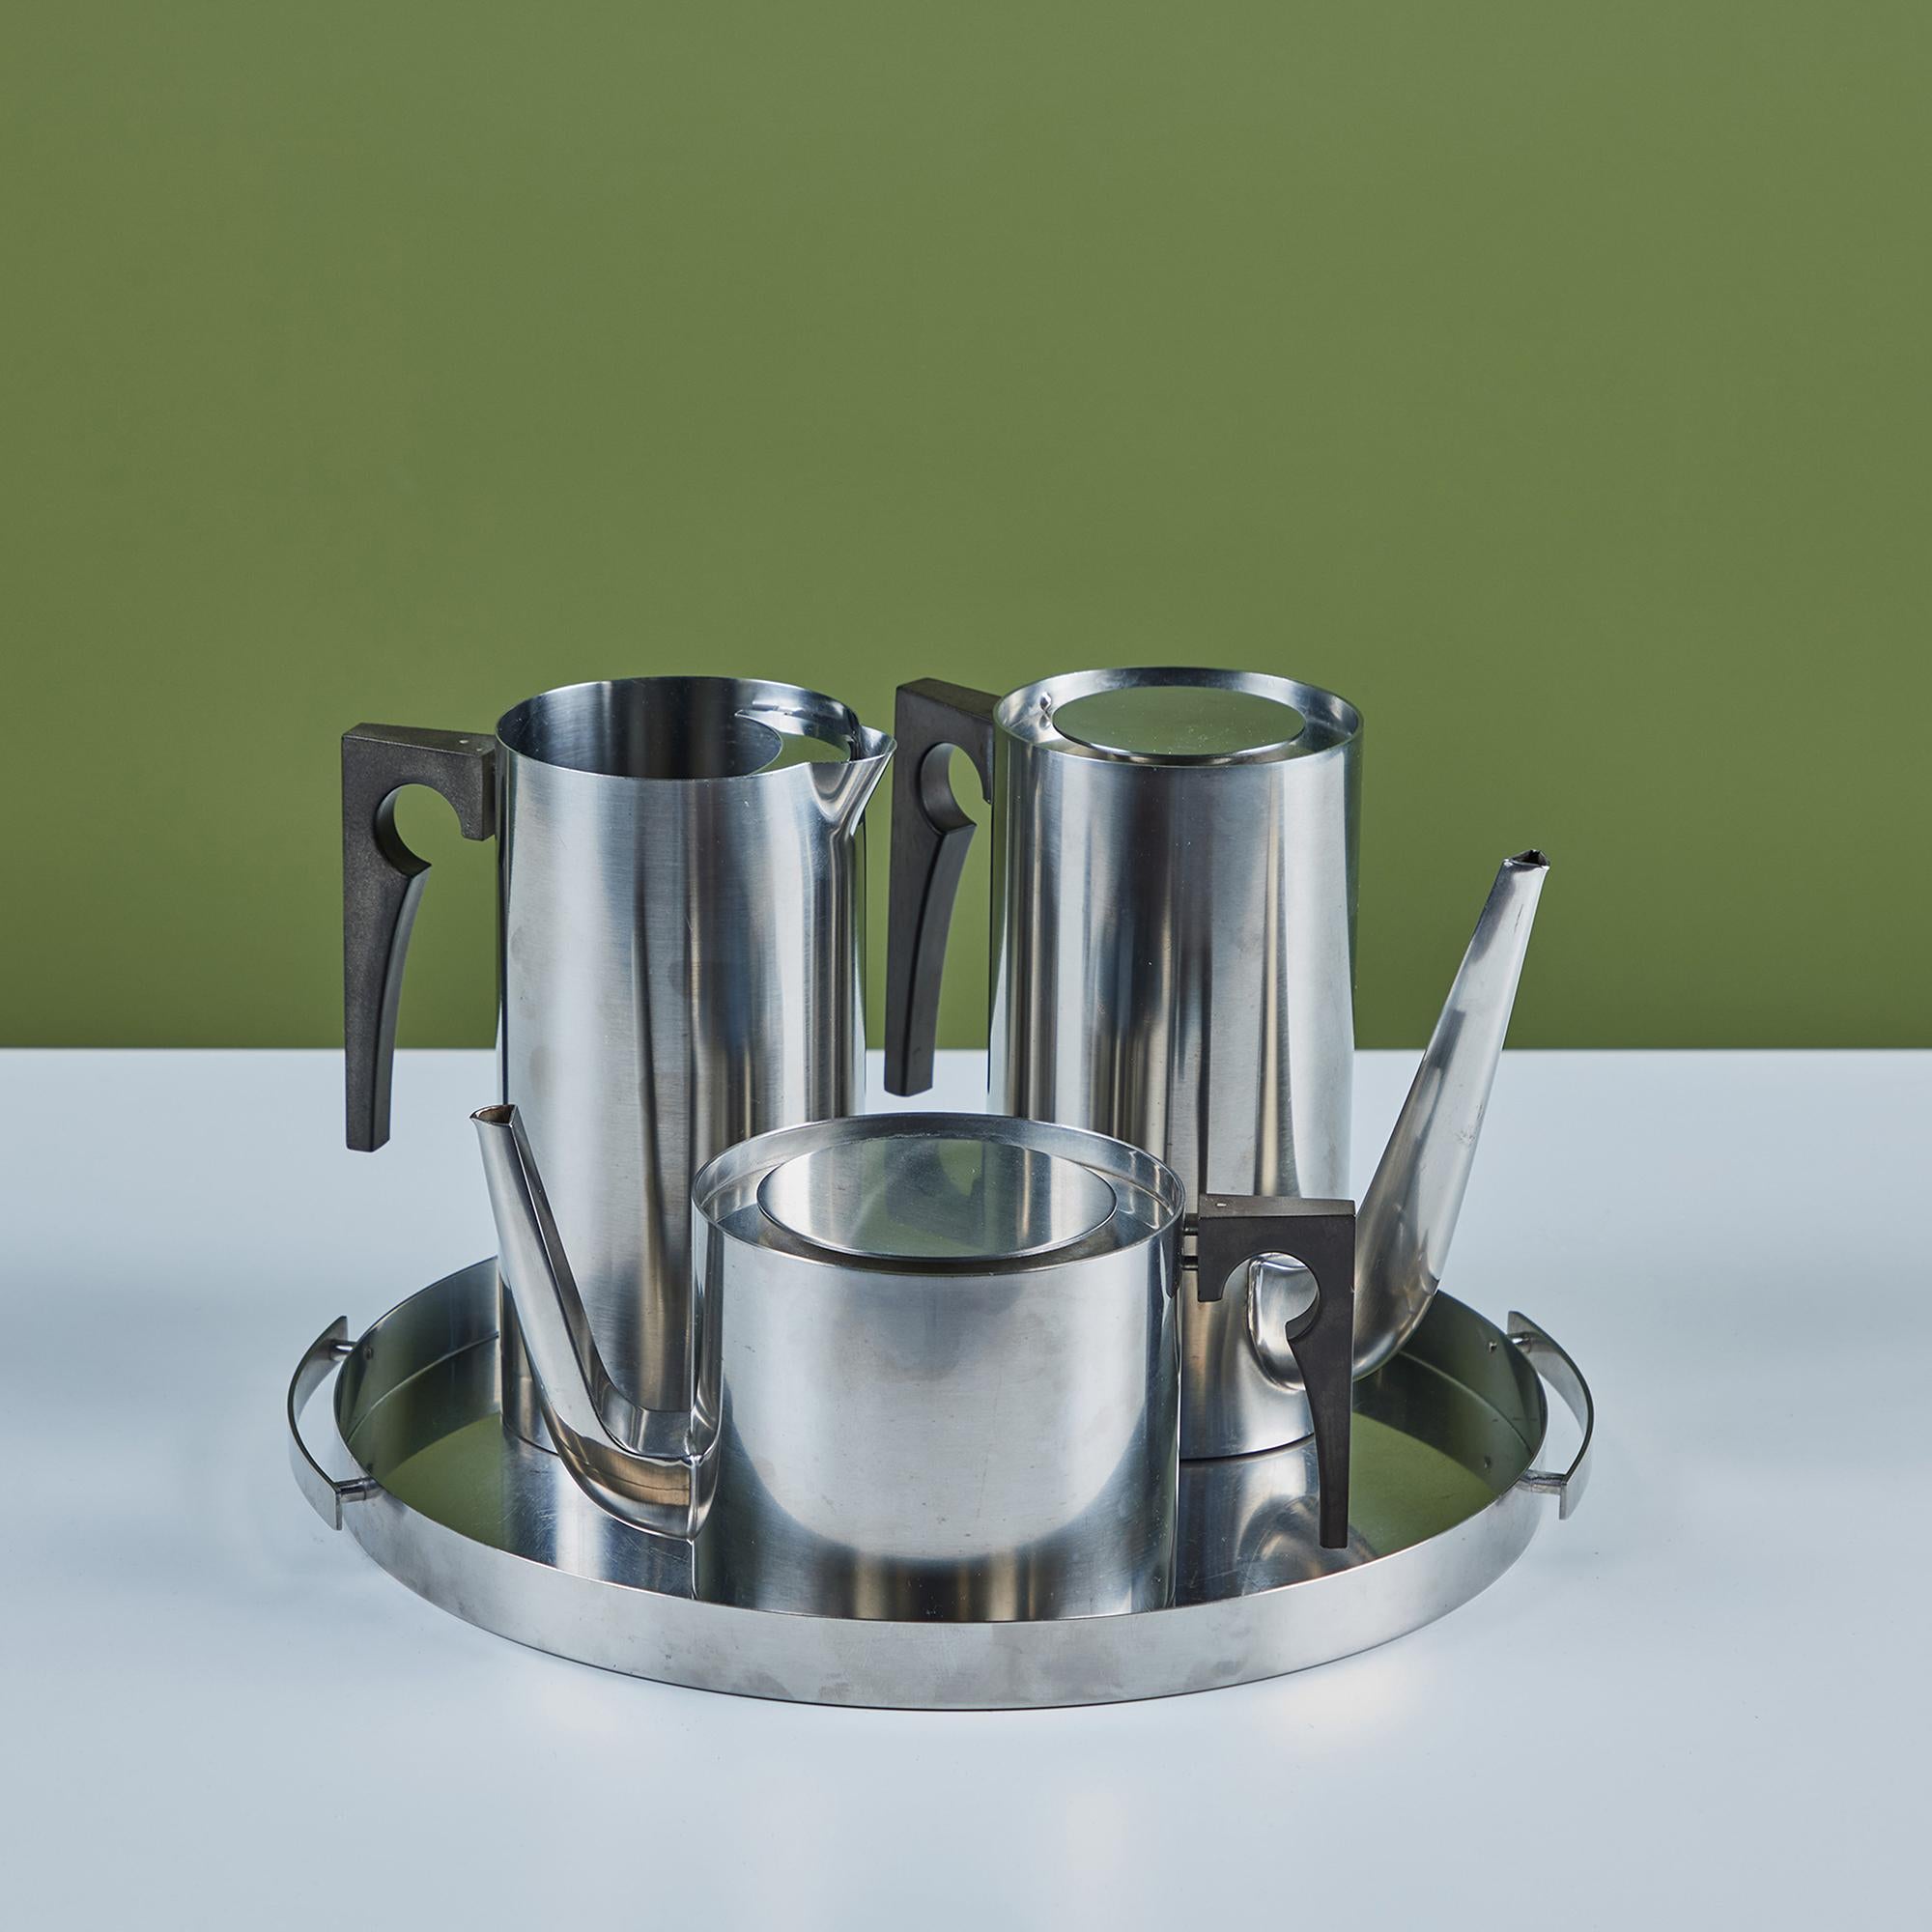 Service à café et à thé de quatre pièces en acier inoxydable par Arne Jacobsen pour Stelton, c.1960s, Danemark. L'ensemble comprend une cafetière, une théière, un pichet et un plateau à bords ronds avec poignées.
Stelton imprimé sur la face